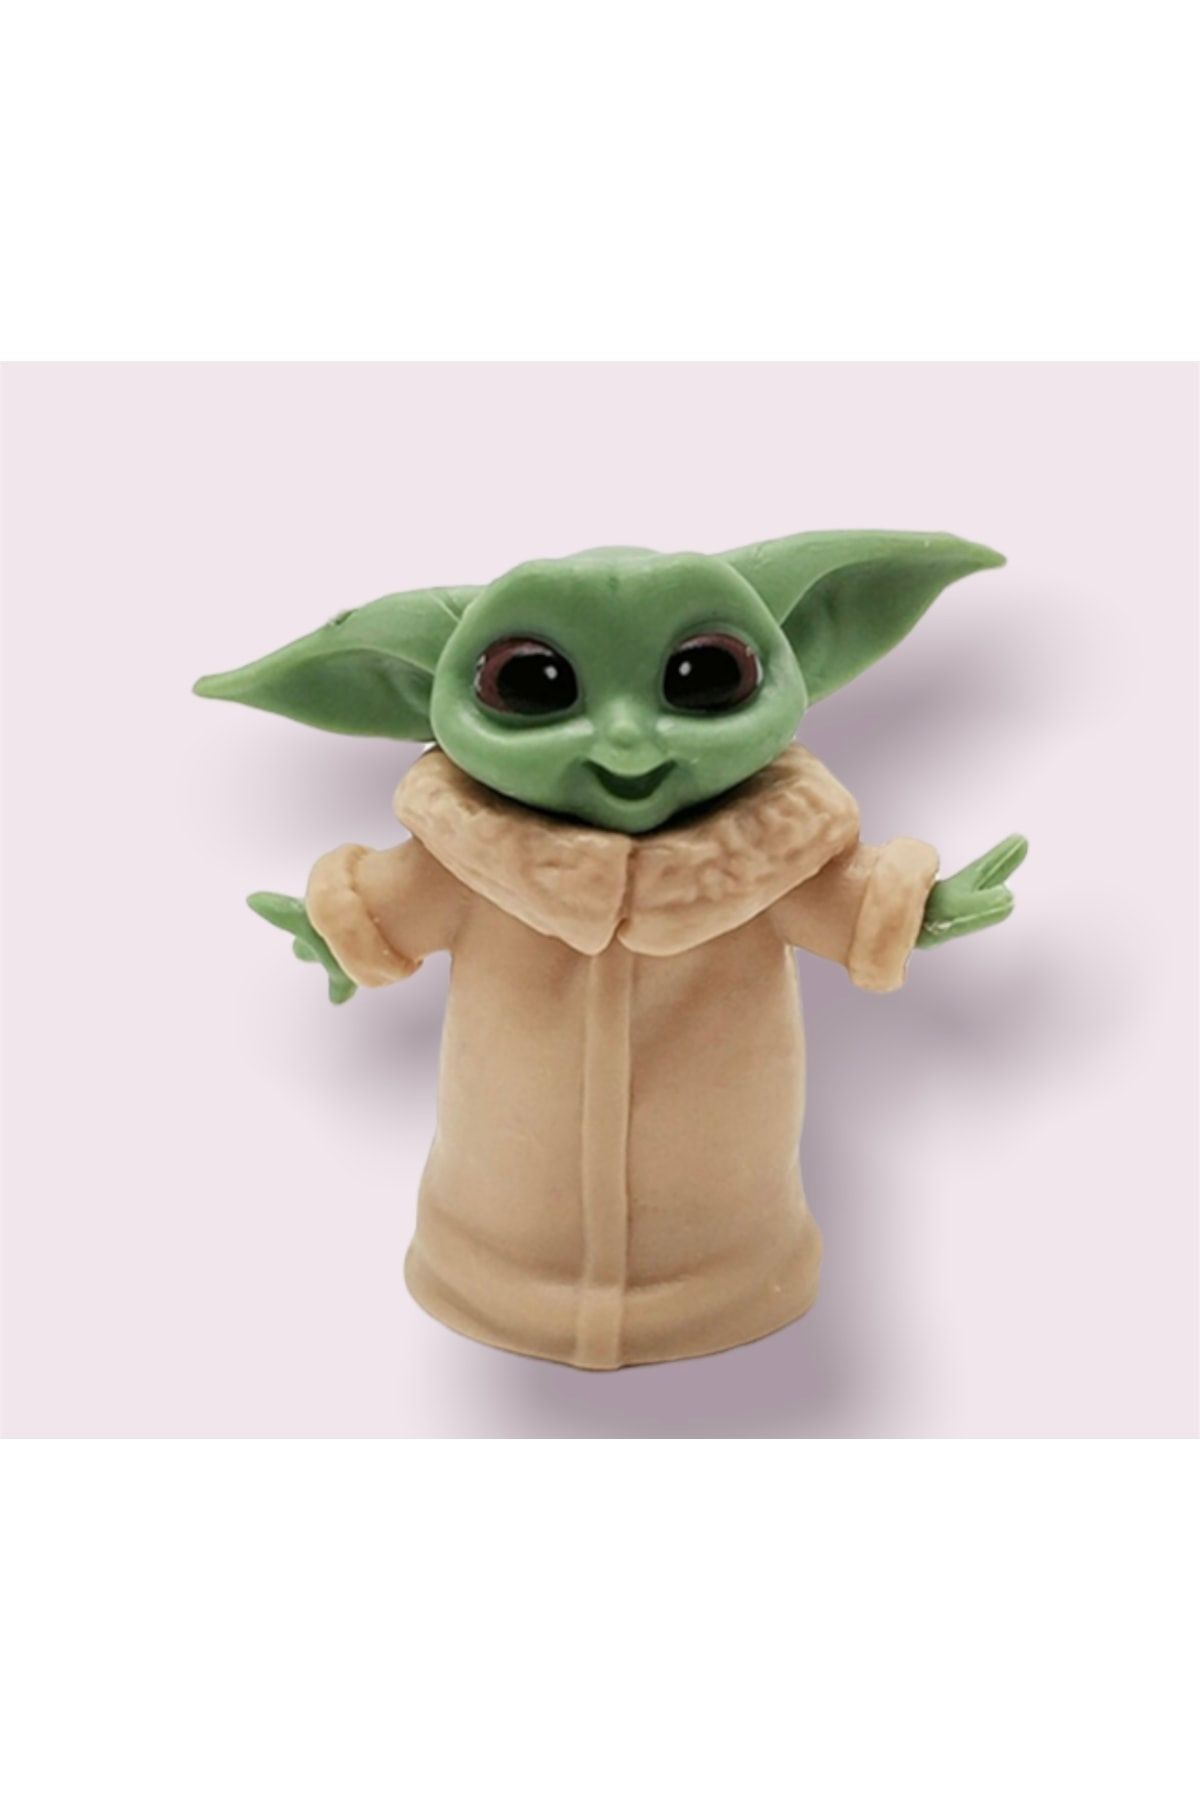 şapşal butik Baby Yoda Mini Figür